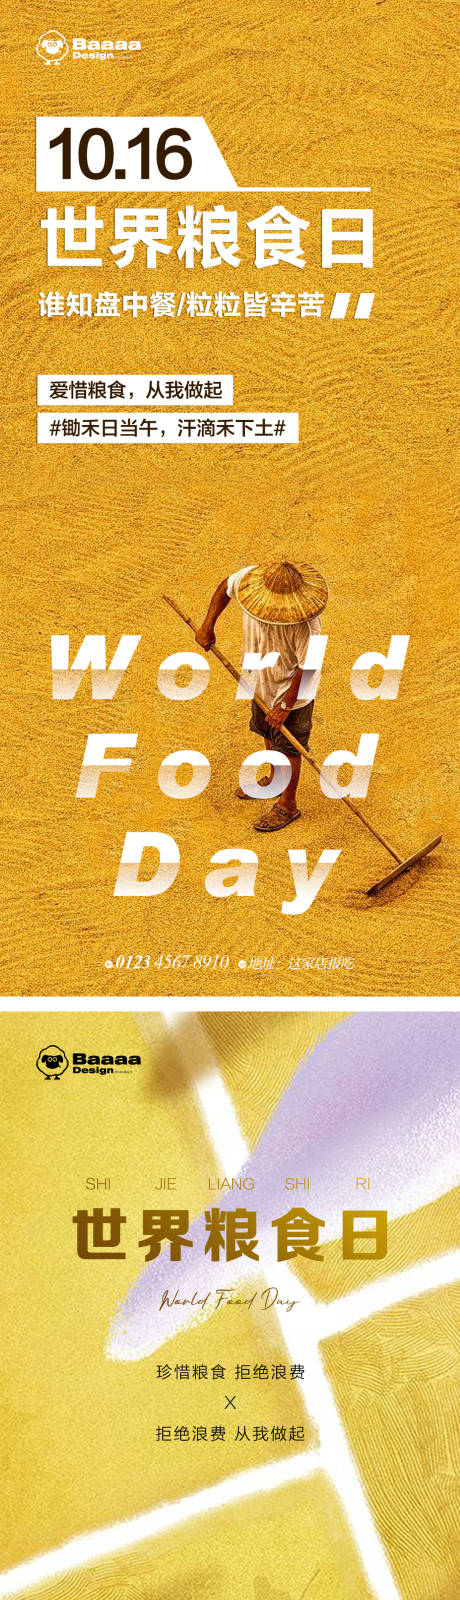 世界粮食日节日单图